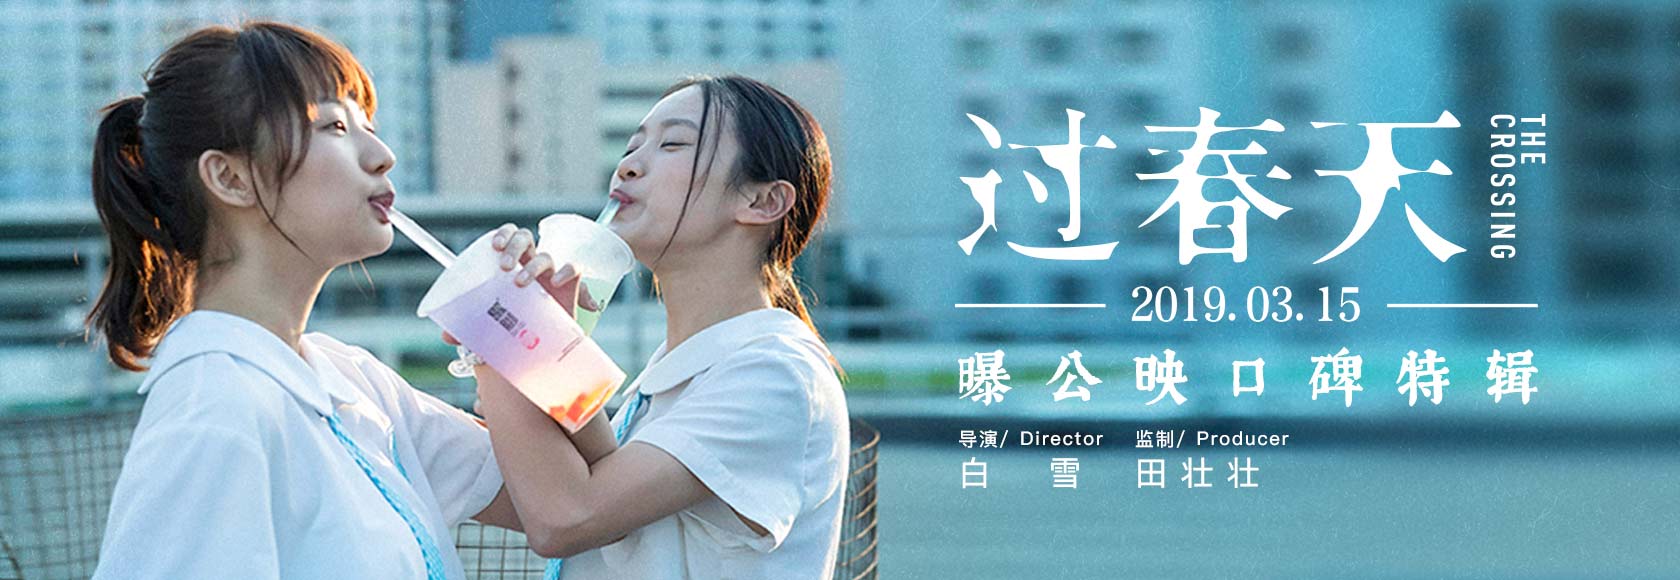 电影《过春天》今日上映   五大看点新鲜揭秘2019最惊喜青春片